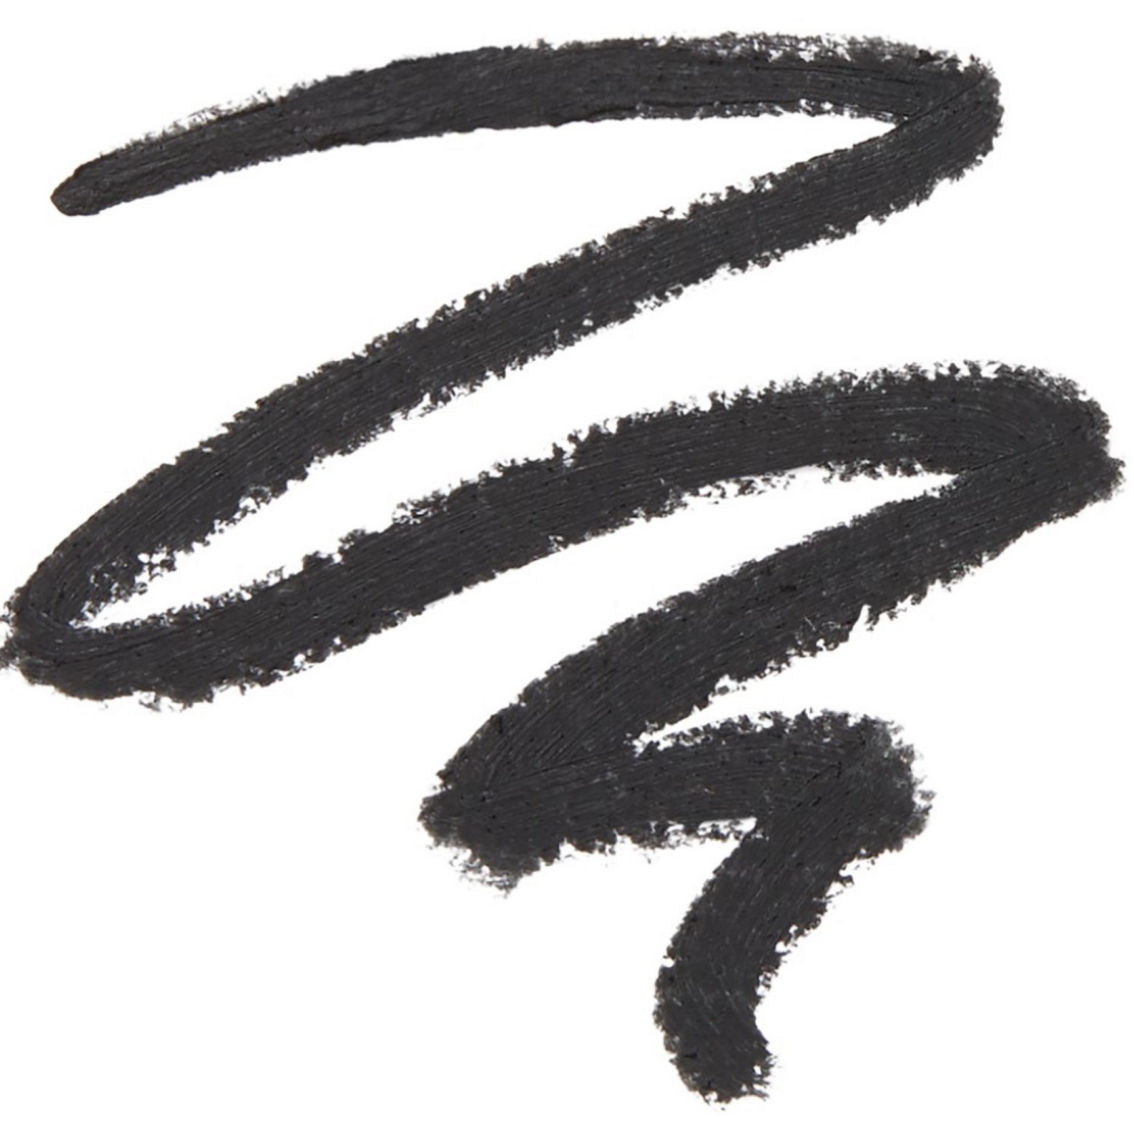 Kylie Cosmetics Gel Eyeliner Pencil - Image 3 of 3